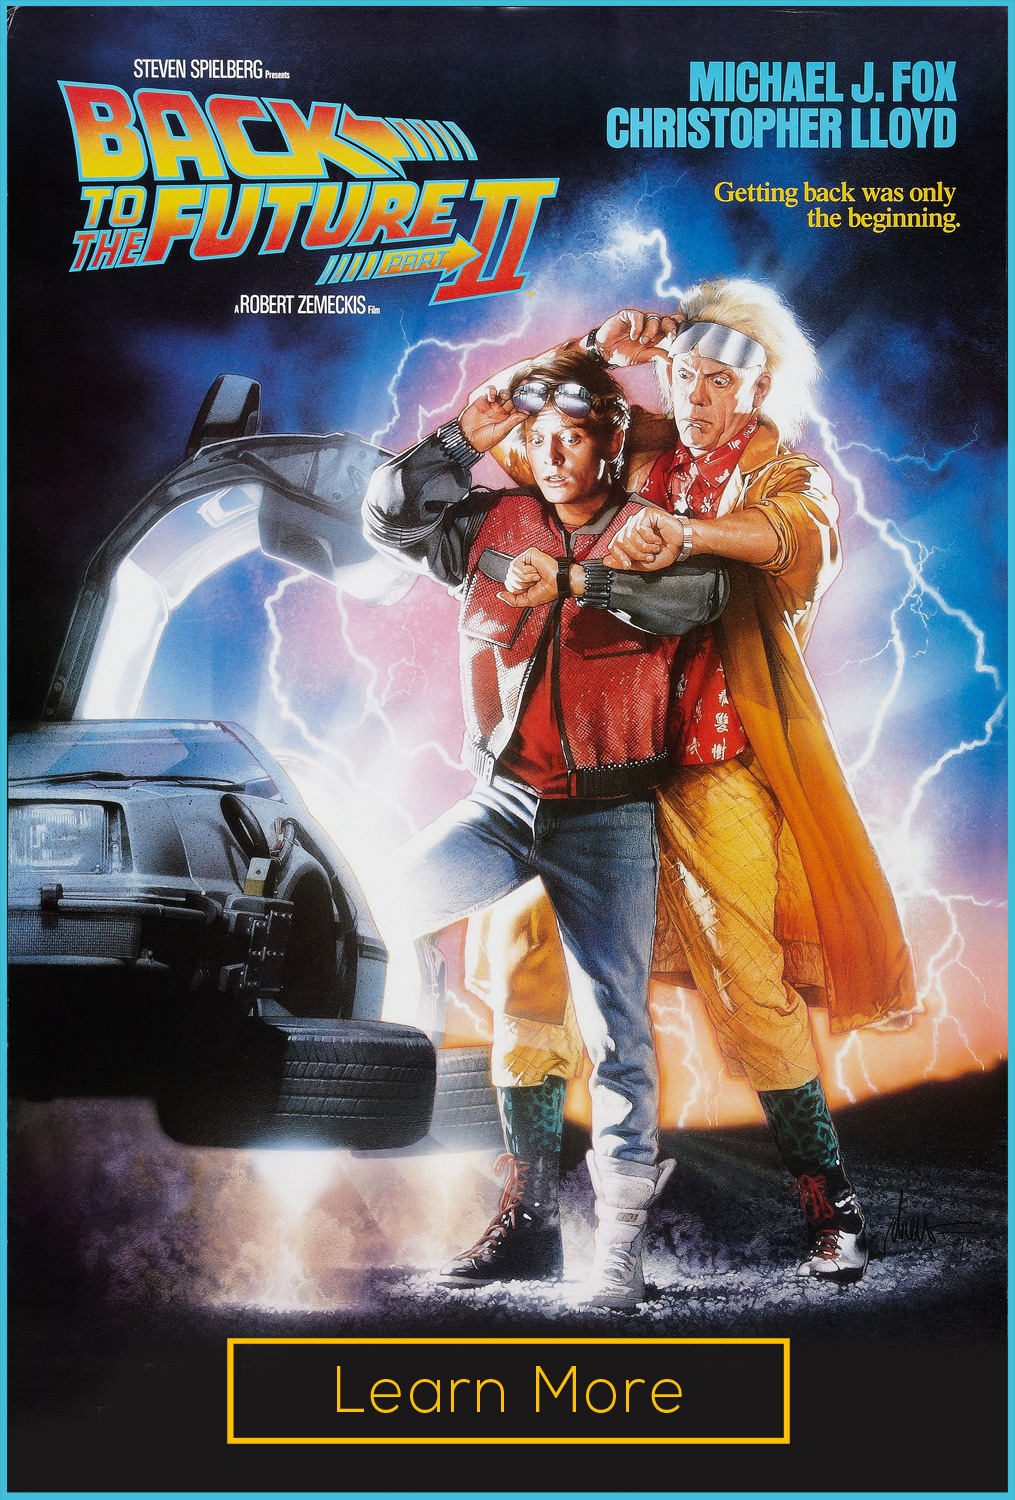 Fox Back To The Future Movie Poster ** Michael J Delorean 24" x 36" 